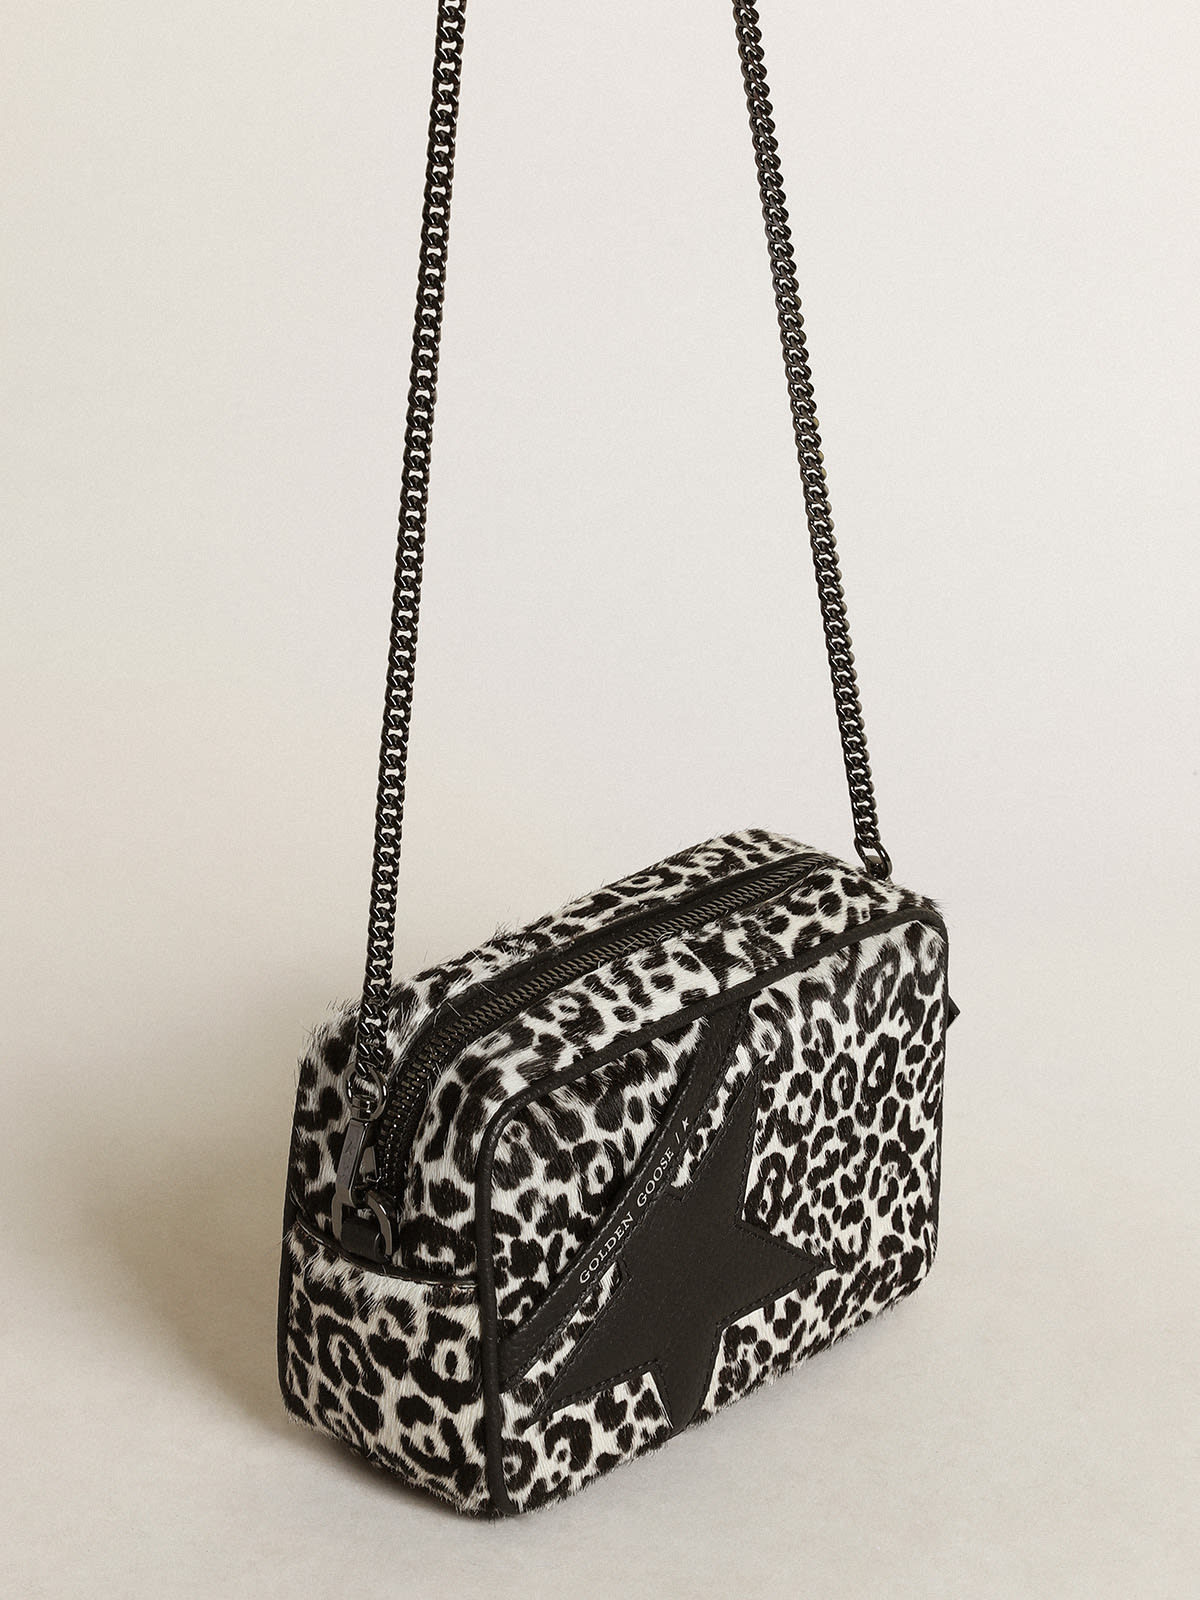 Golden Goose - Borsa Mini Star Bag in cavallino leopardato color bianco e nero con stella in pelle nera in 